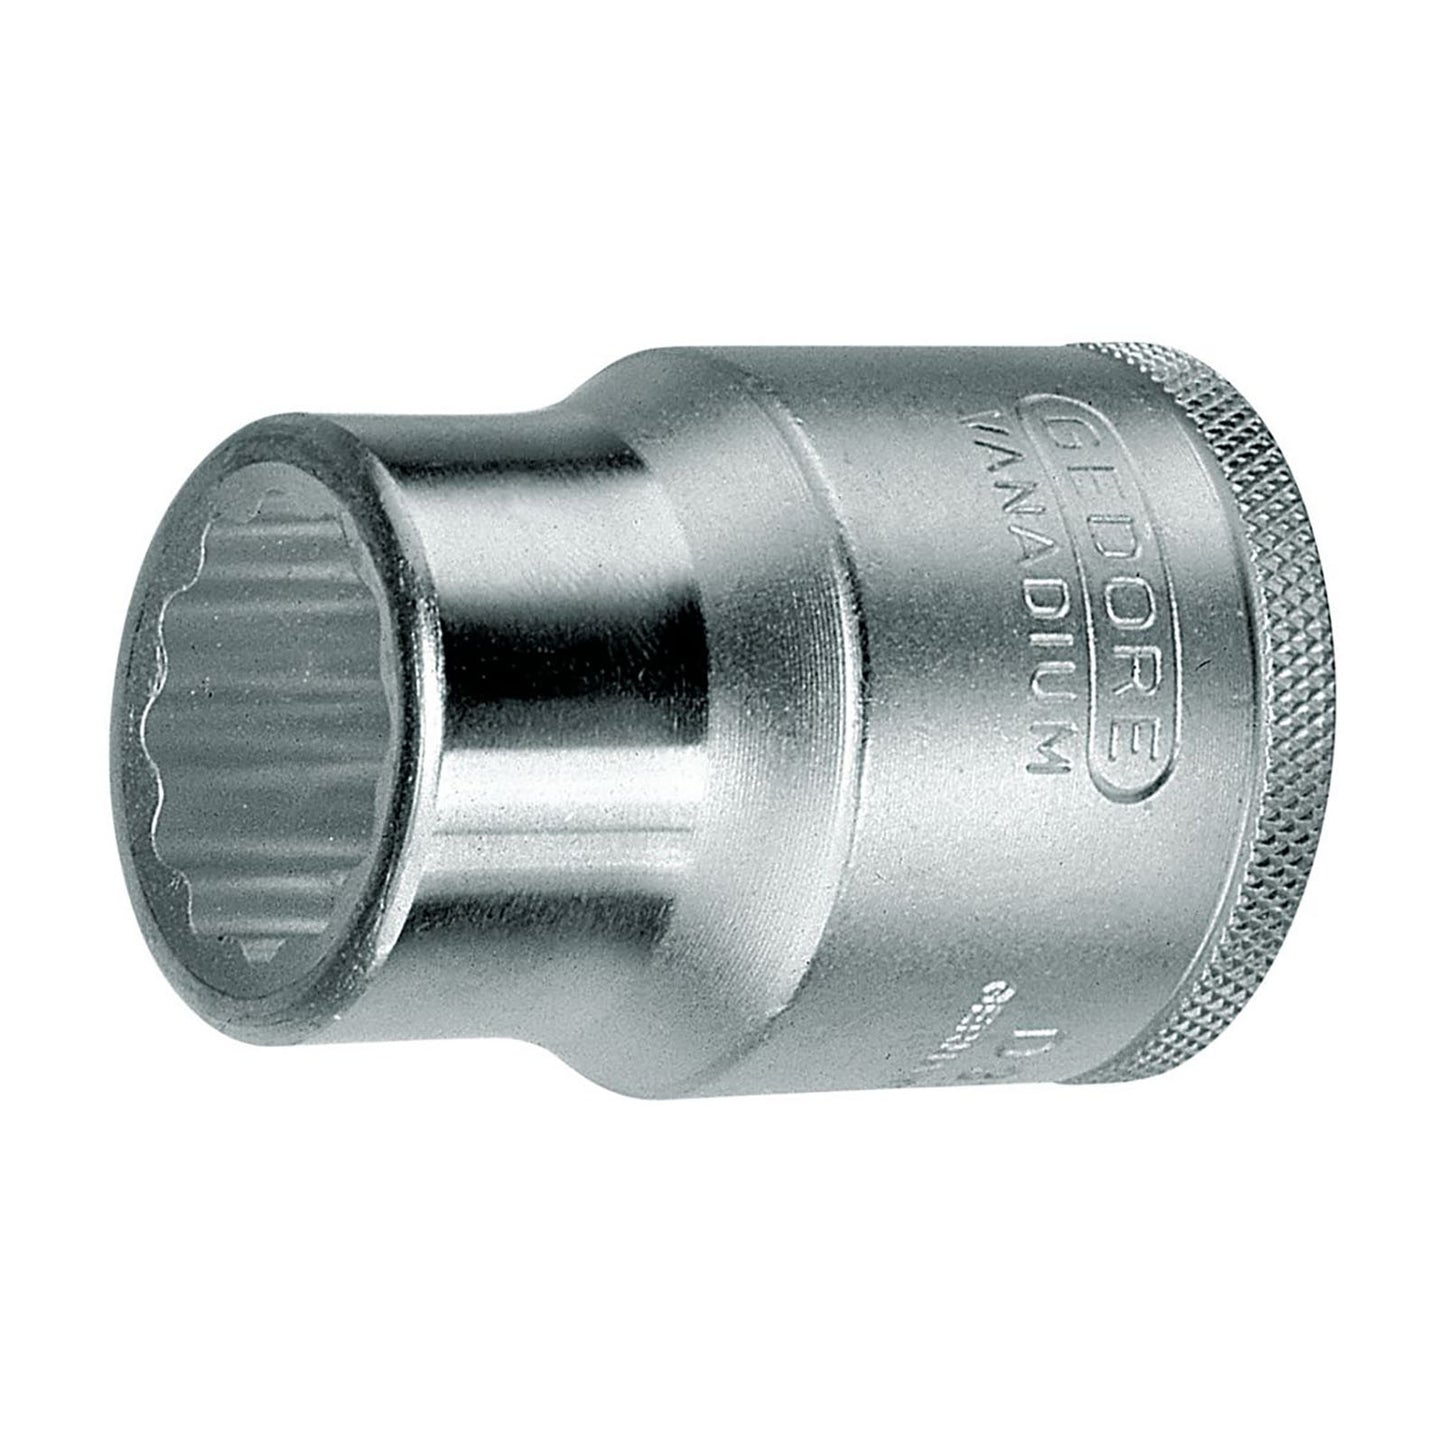 GEDORE D 32 2AF - Unit Drive Socket 3/4", 2AF (6275770)